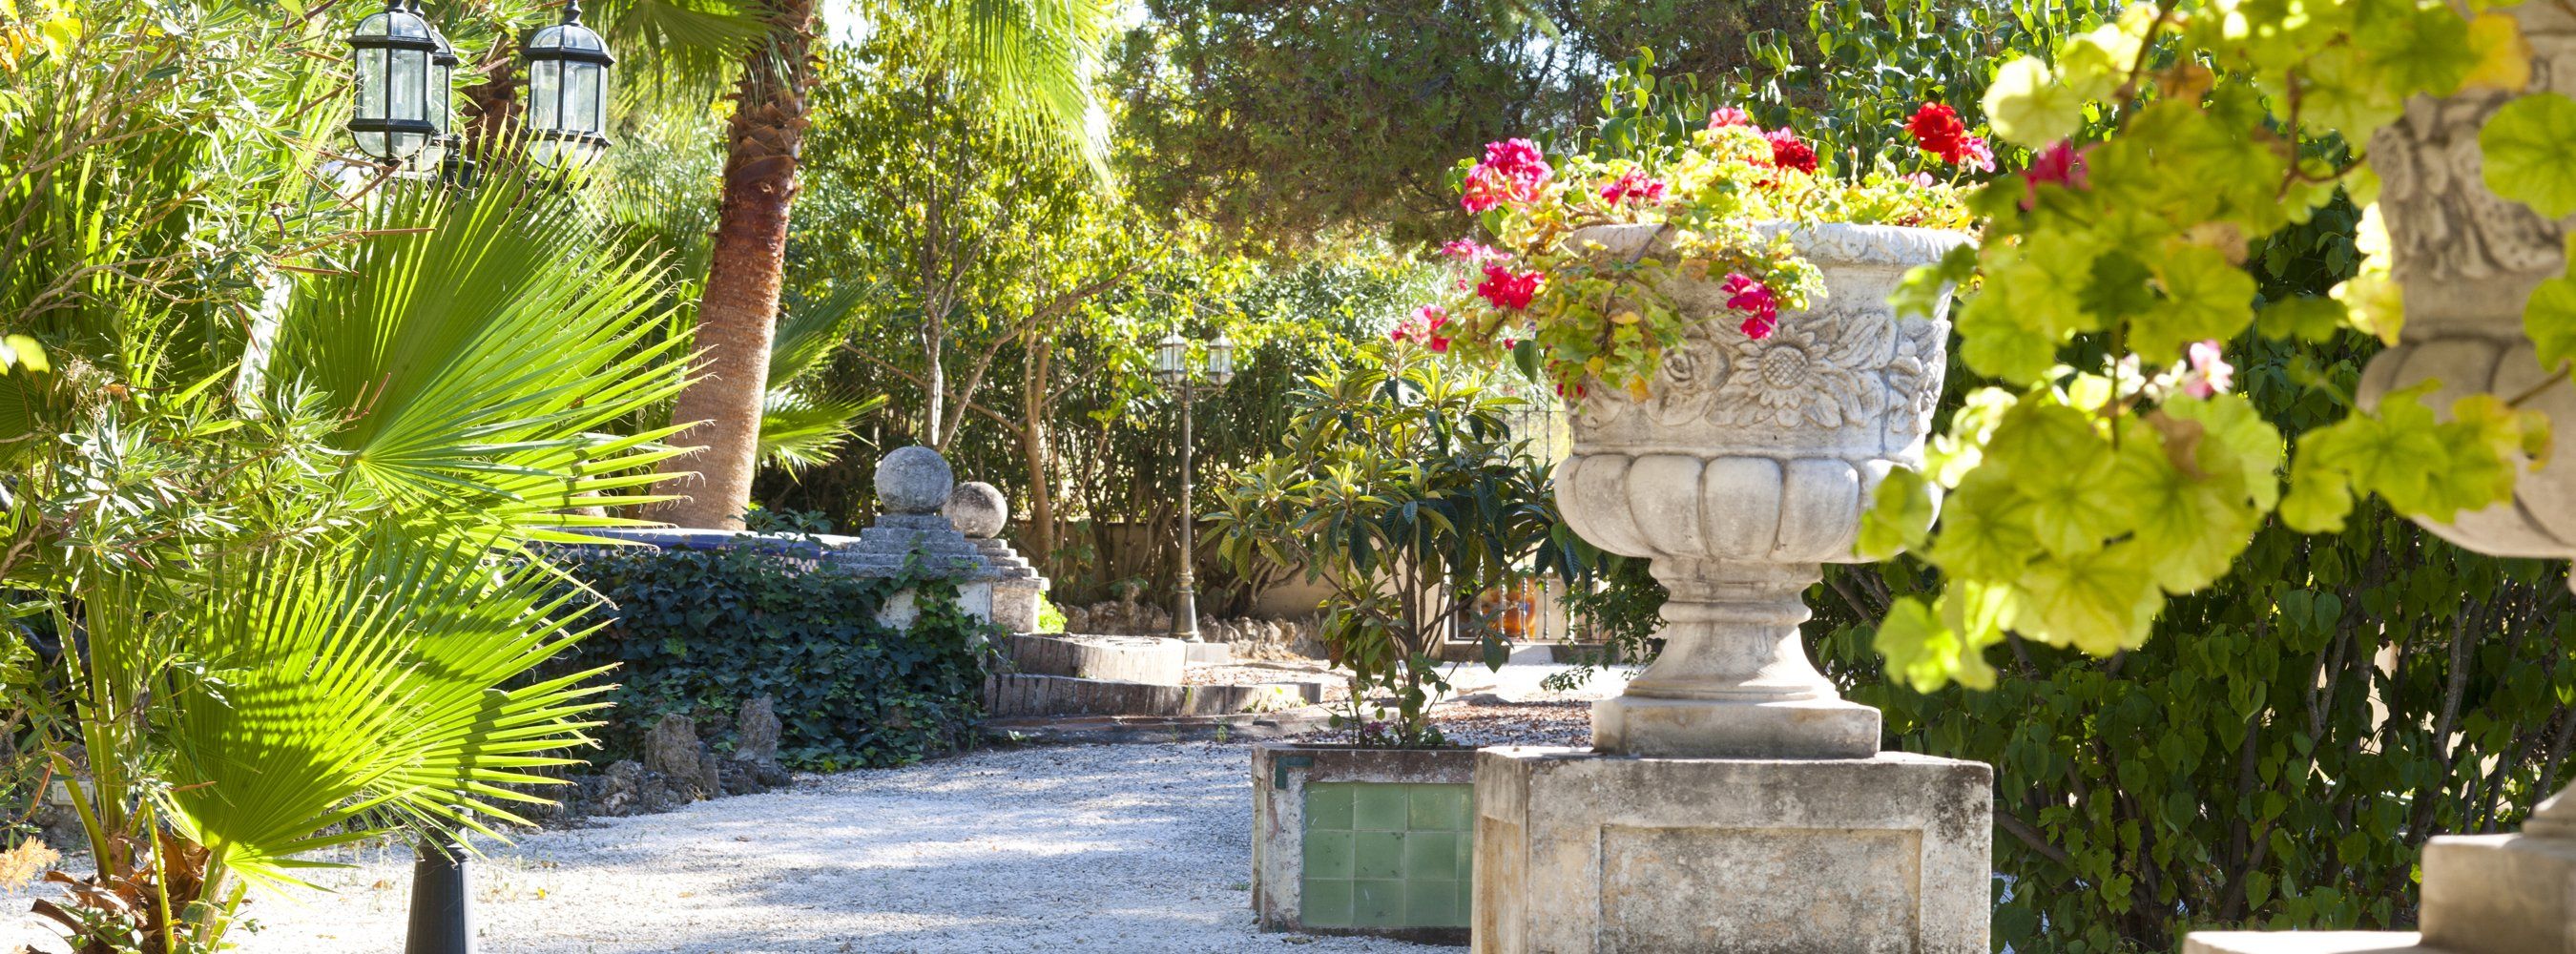 garden andalucia